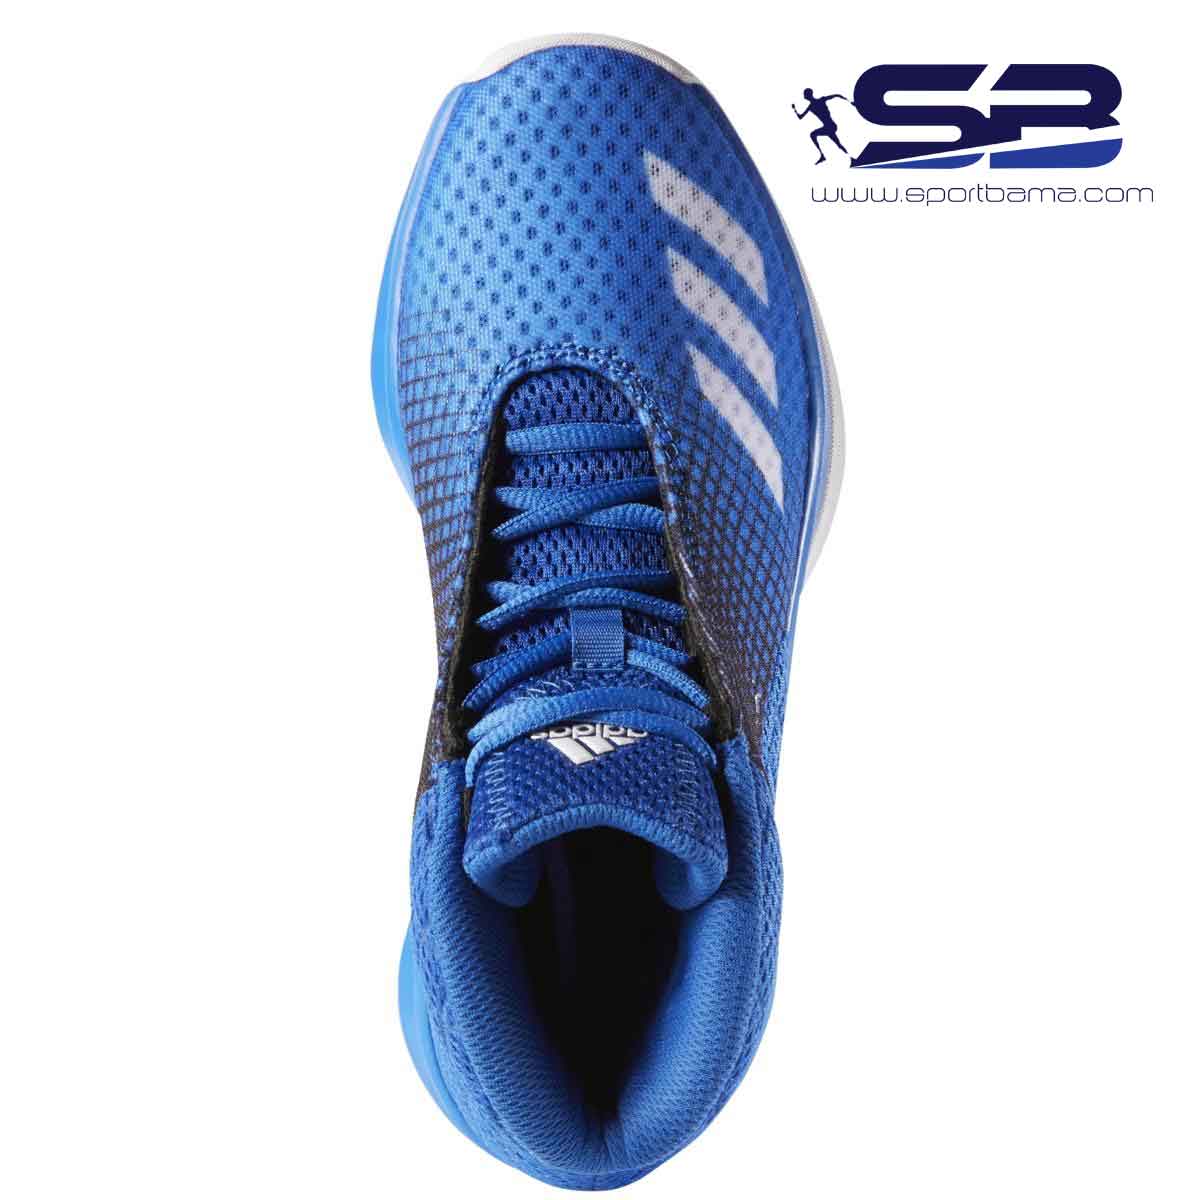  خرید  کفش کتانی اورجینال ادیداس مخصوص بسکتبال   adidas basketball shoes aq7950